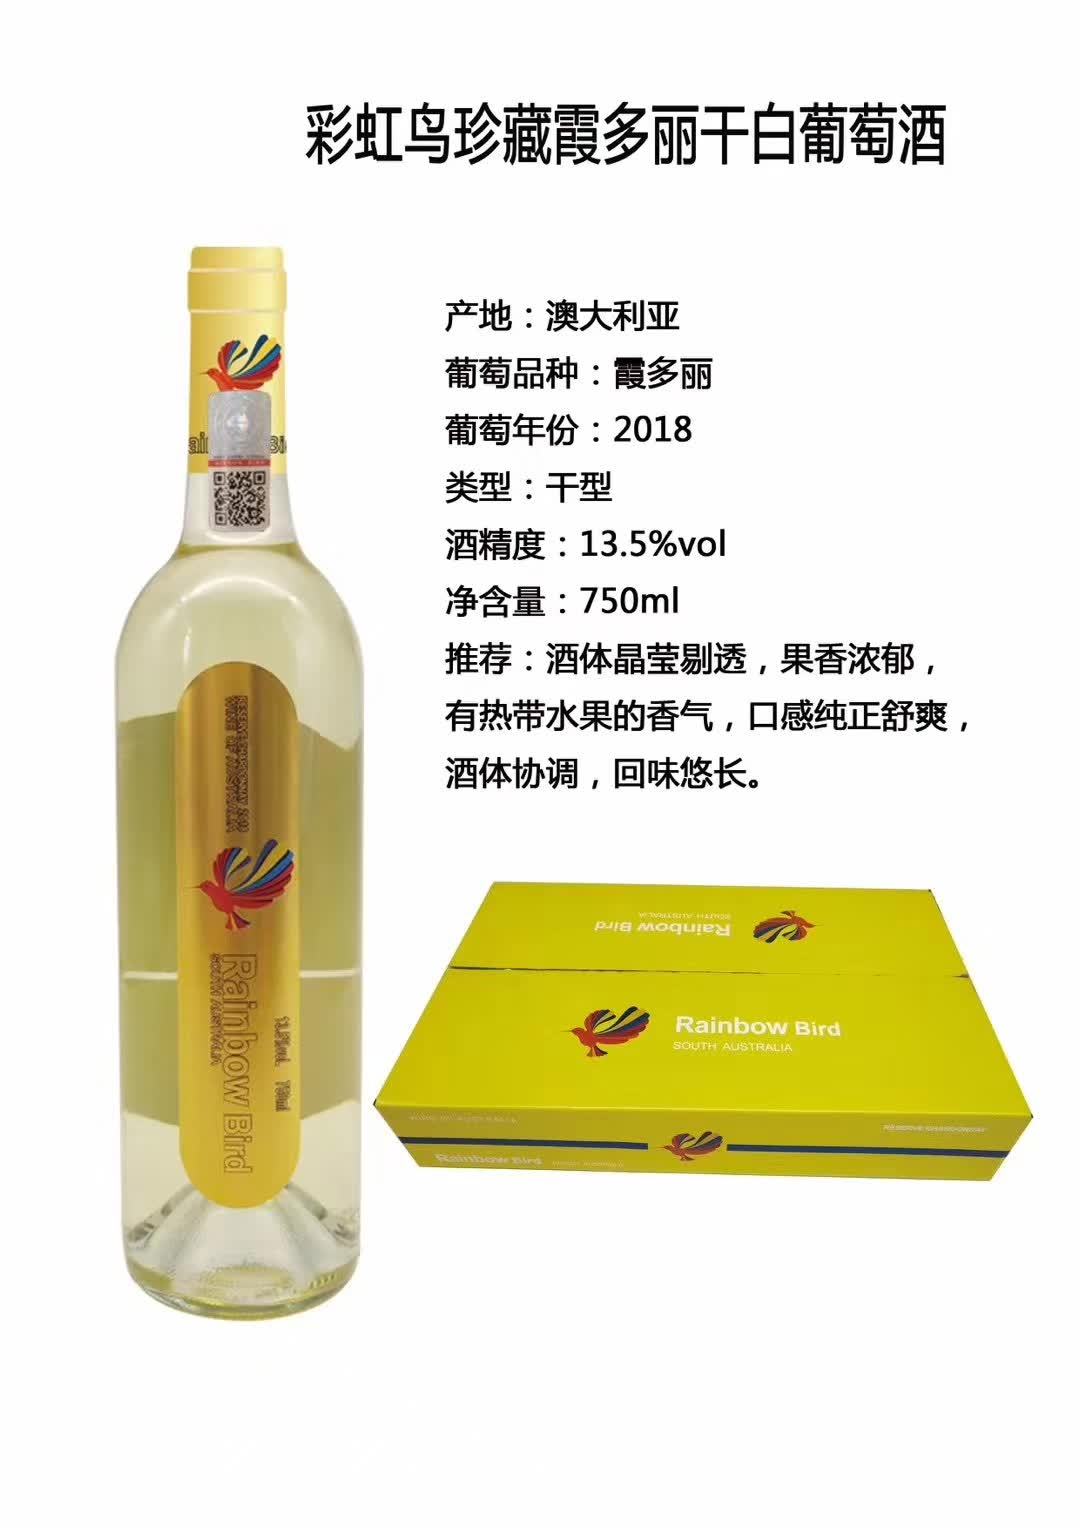 上海万耀澳大利亚原装进口巴罗萨产区彩虹鸟珍藏干白白酒价格